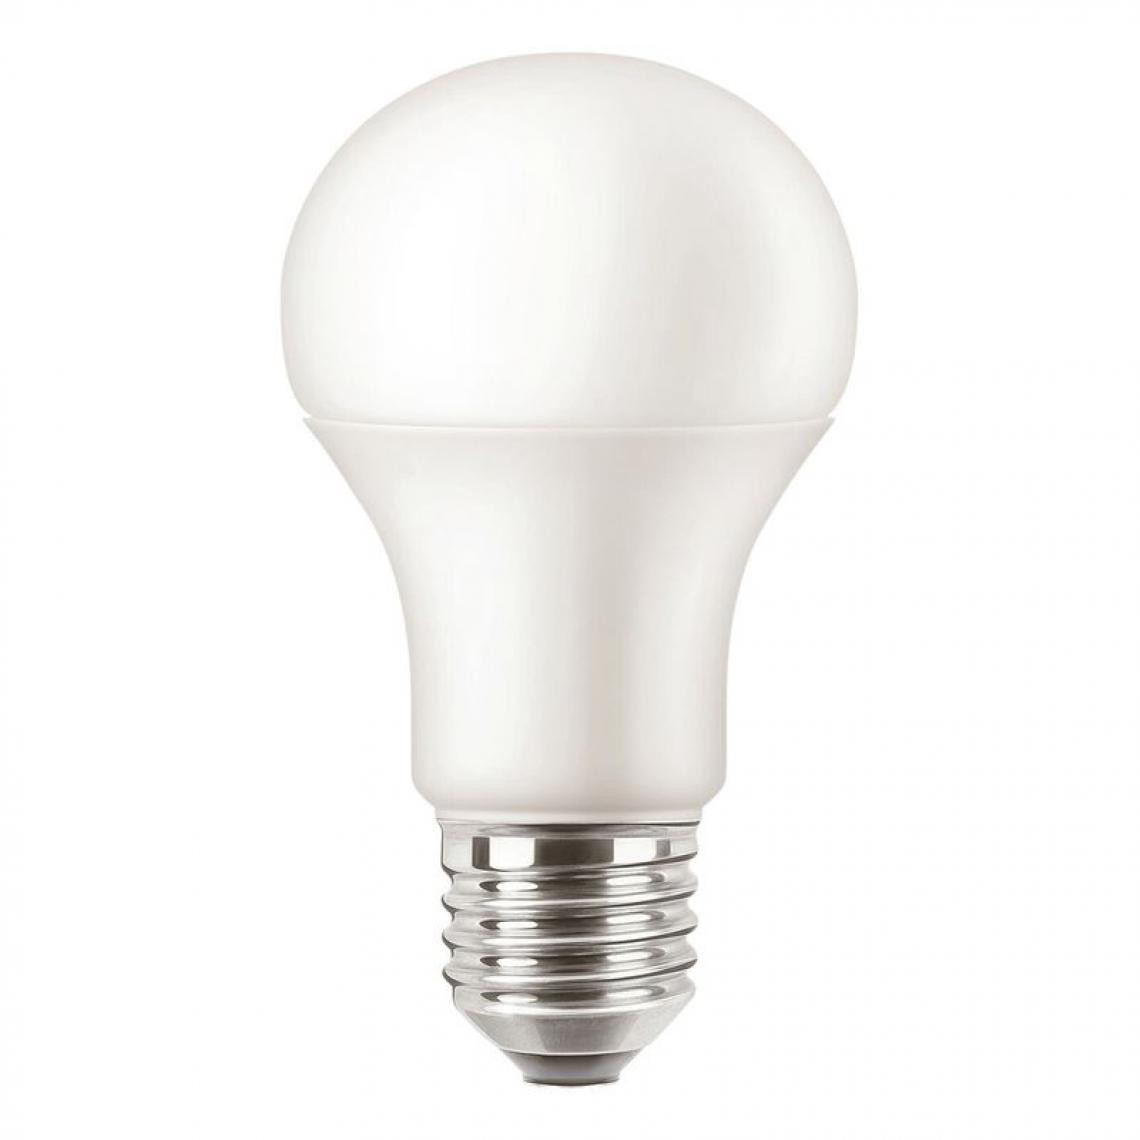 But - Ampoule LED standard E27 100w ATTRALUX Blanc chaud - Ampoules LED